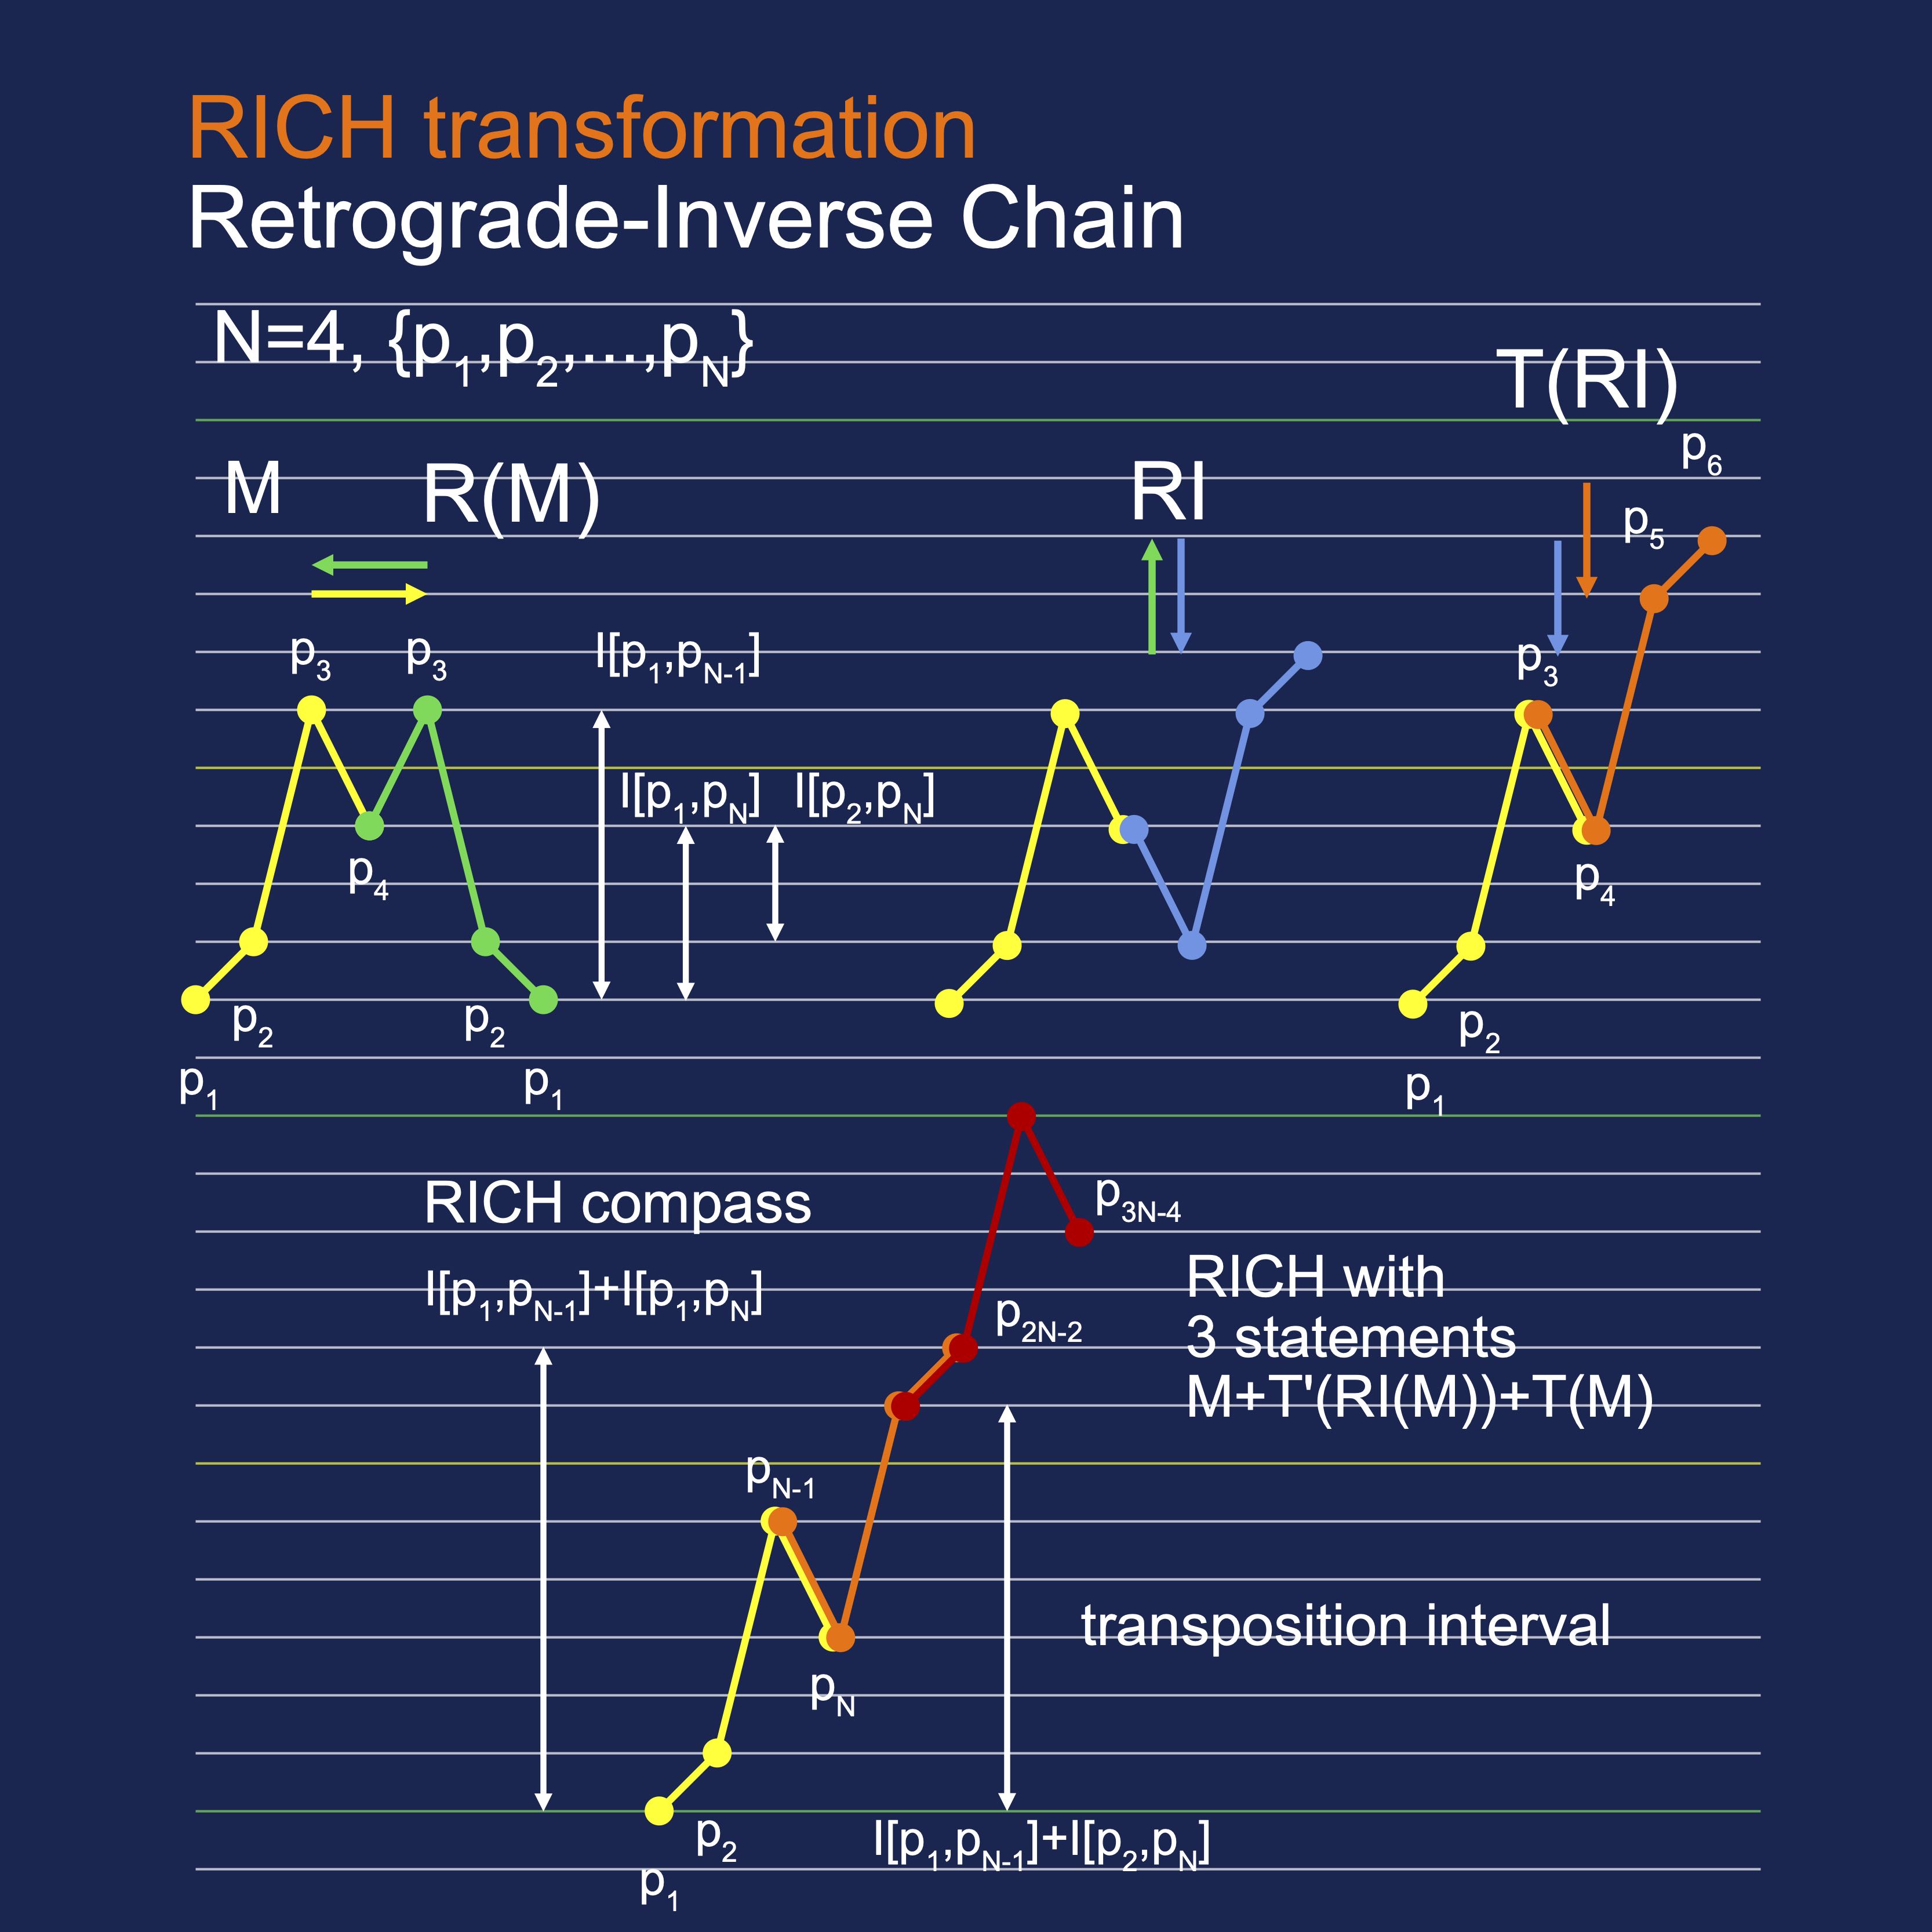 The Retrograde-Inversion Chain Diagram